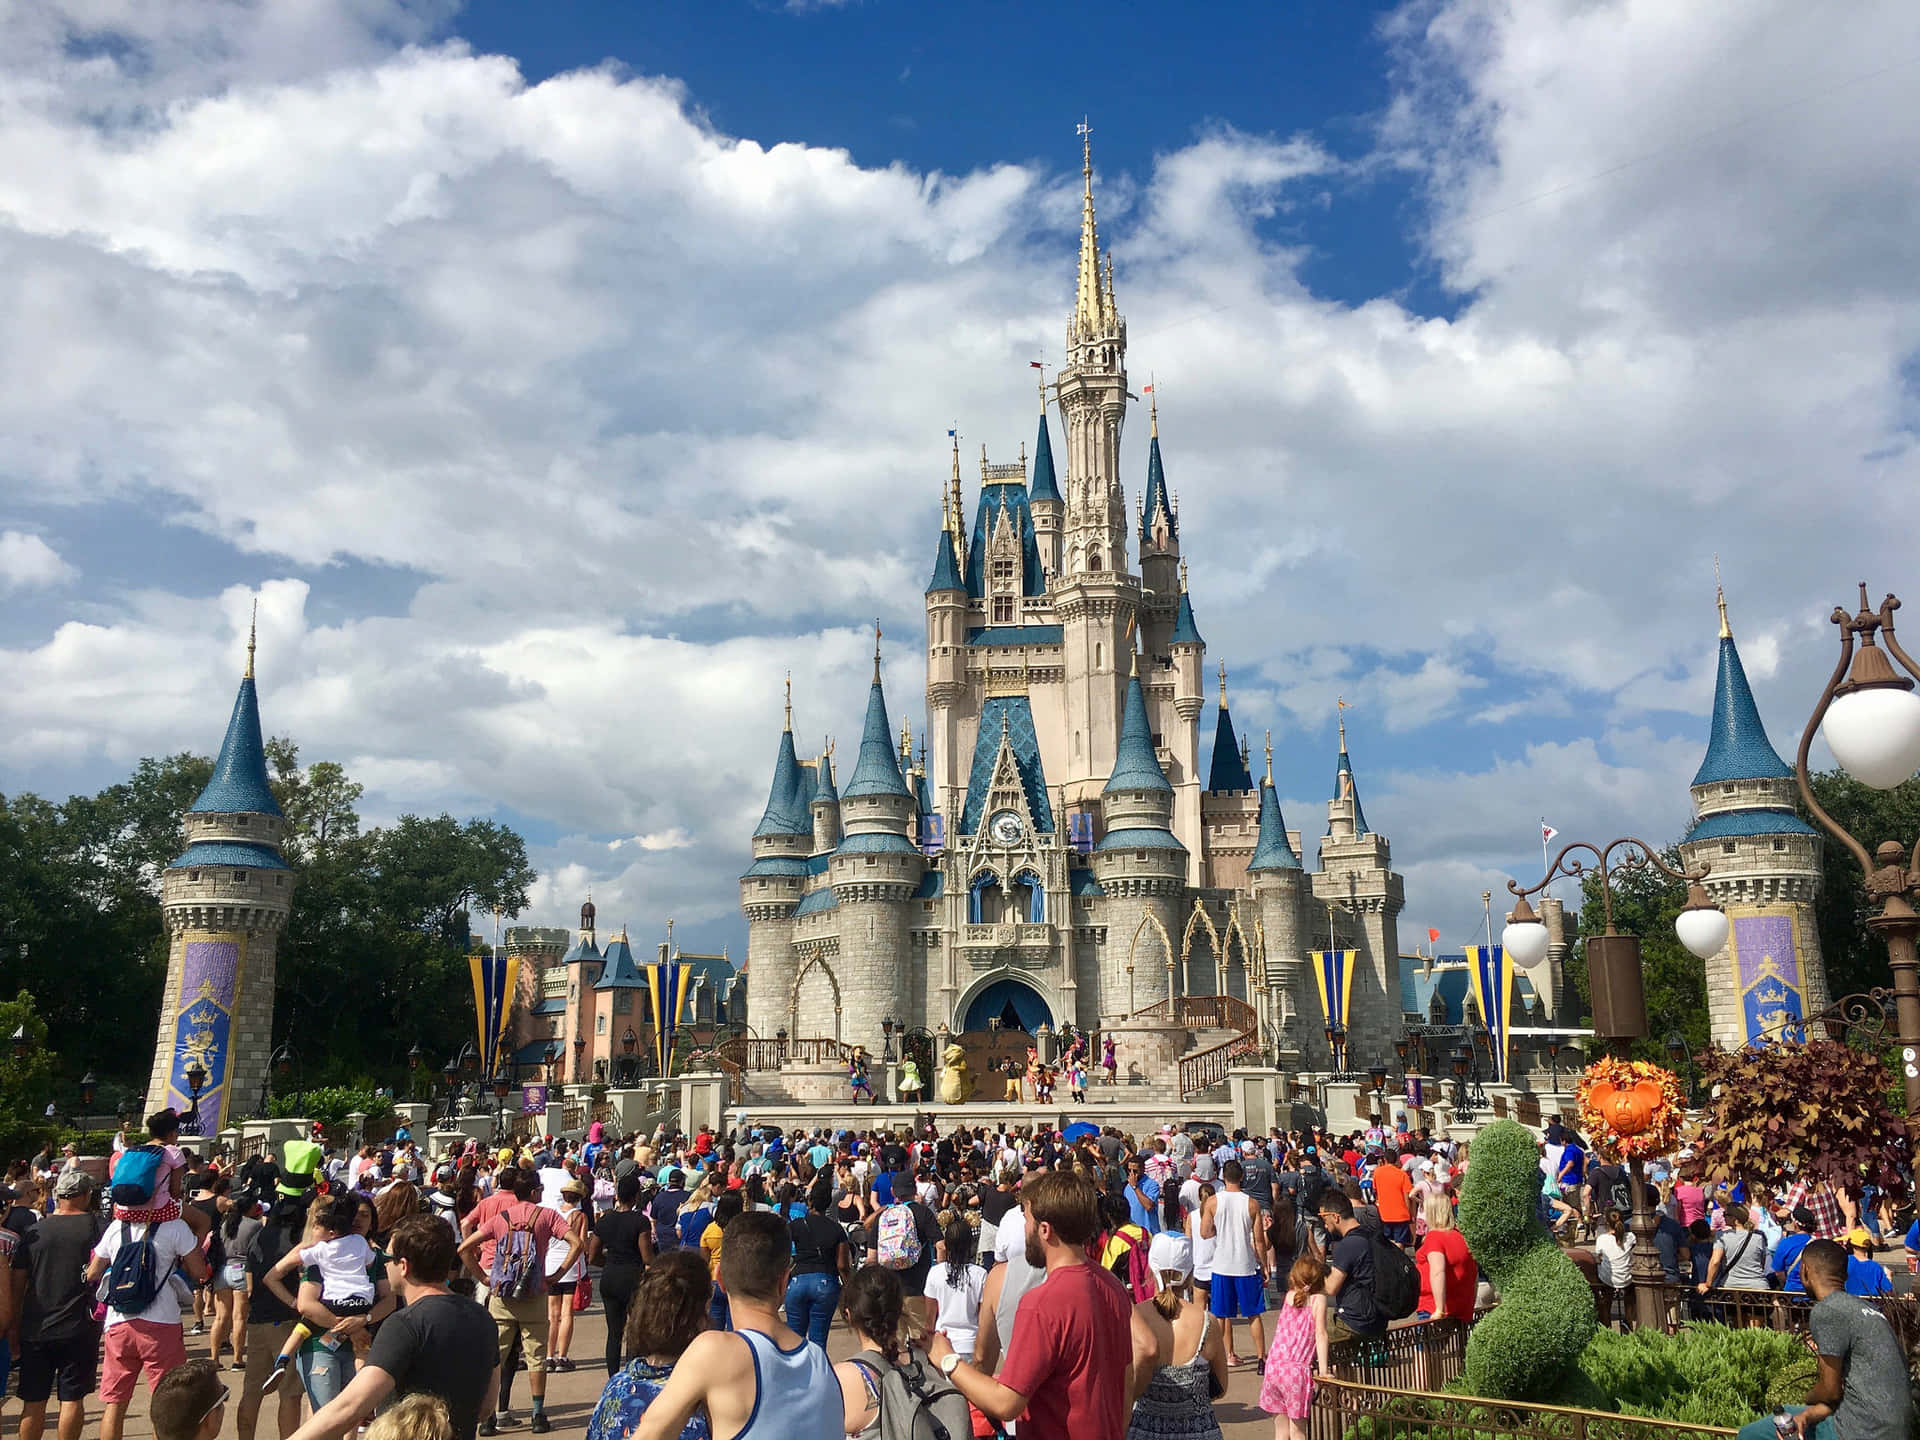 Mitatemberaubendem Blick Auf Das Strahlende Cinderella-schloss Ist Disney World Das Ultimative Ziel Für Familien.